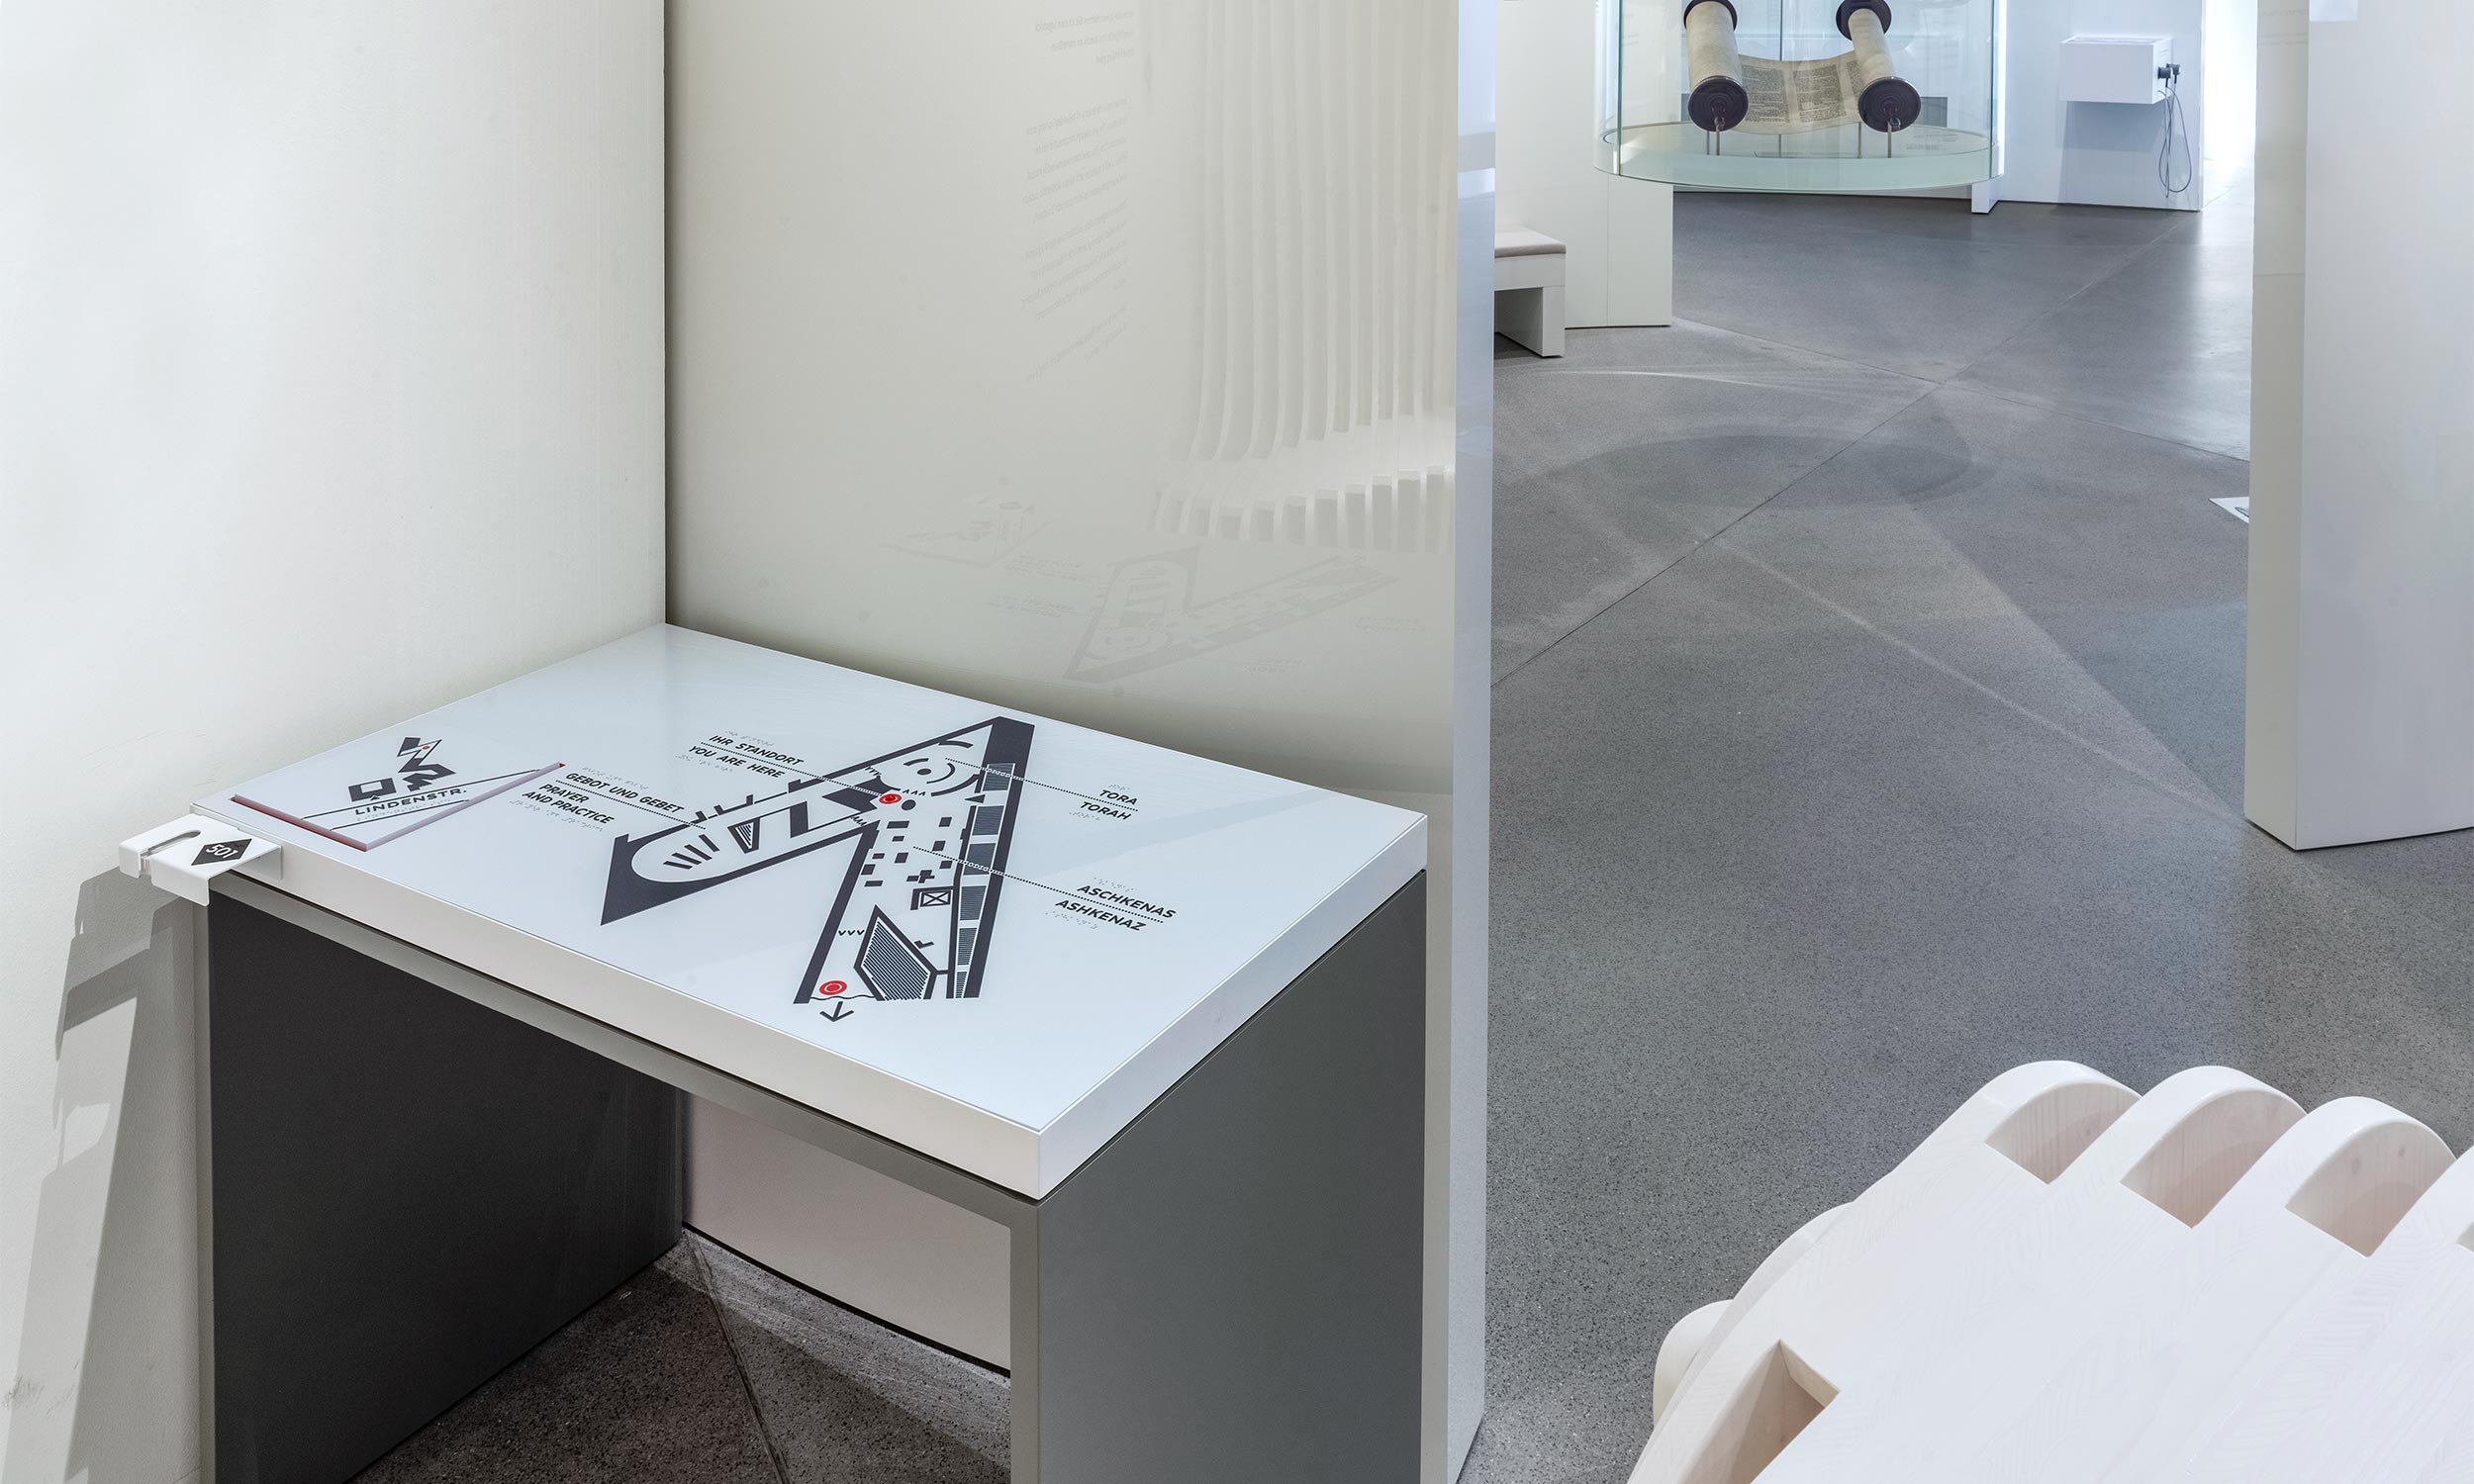 Foto vom Tastplan im Jüdisches Museum, Berlin auf einem Tisch befestigt. Der Tisch steht links in einer Ecke die er ganz ausfüllt. Rechts davon endet die Wand und gibt den Blick auf den dahinter liegenden Ausstellungsraum mit Exponaten frei.